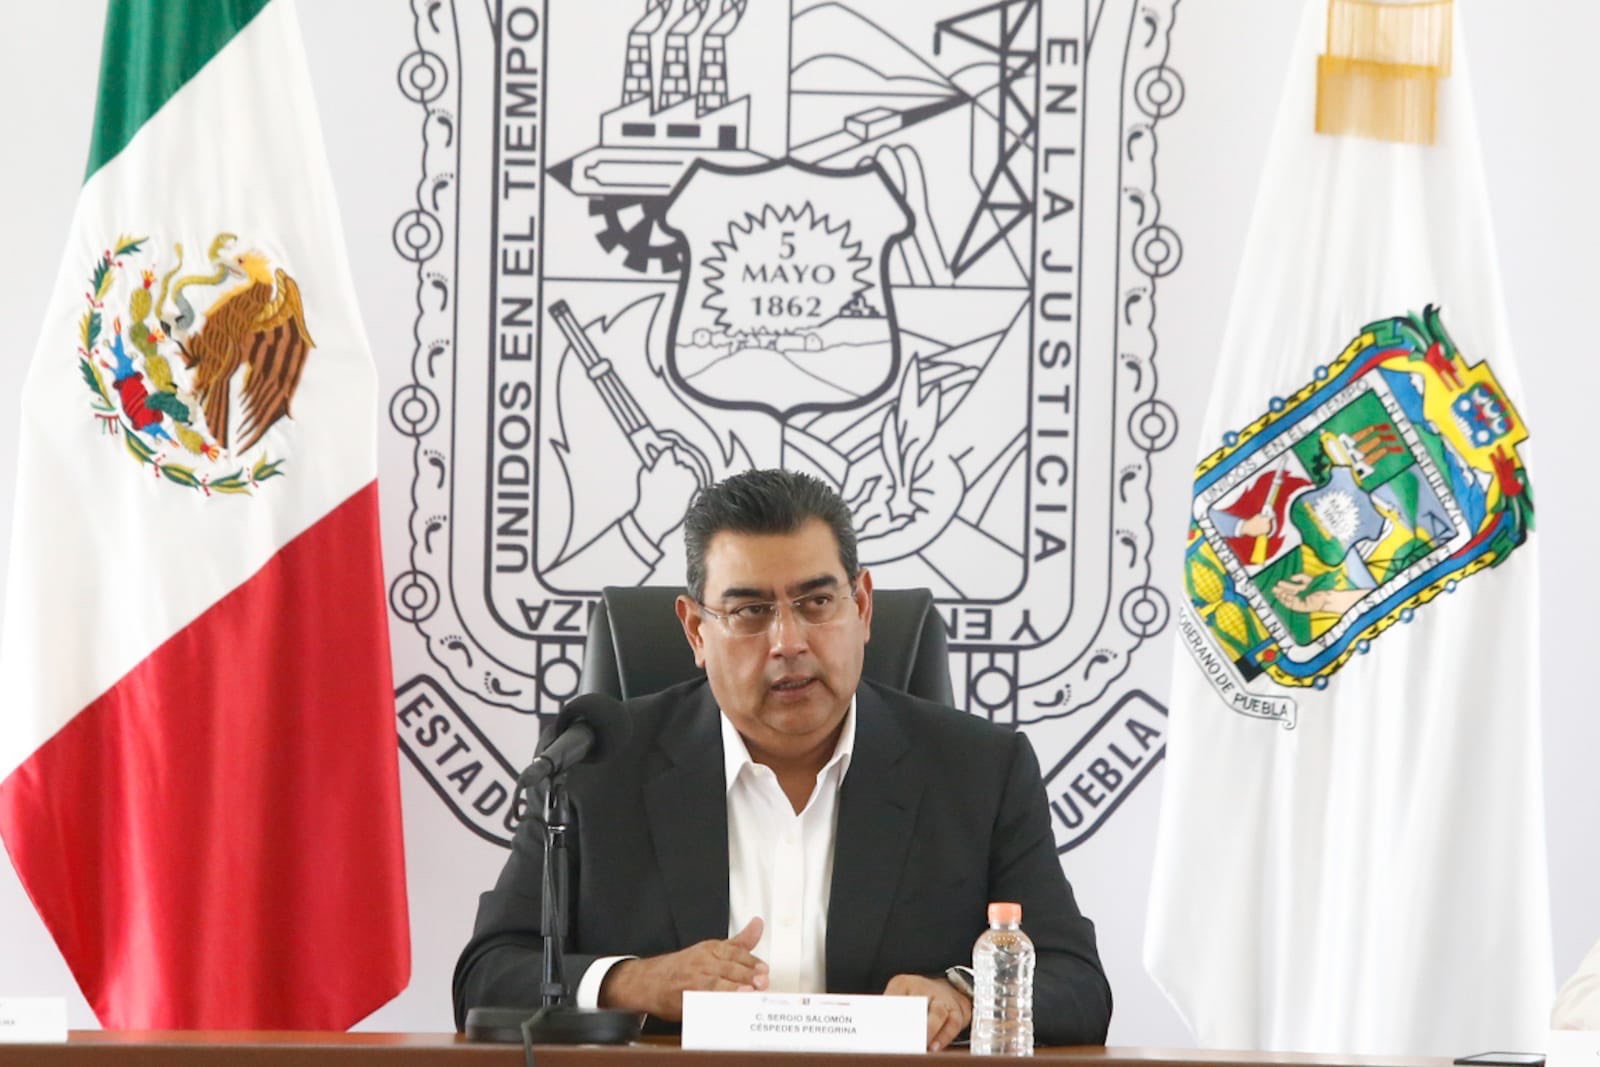 Asume gobierno de Puebla pago en hacienda faltante desde 2015